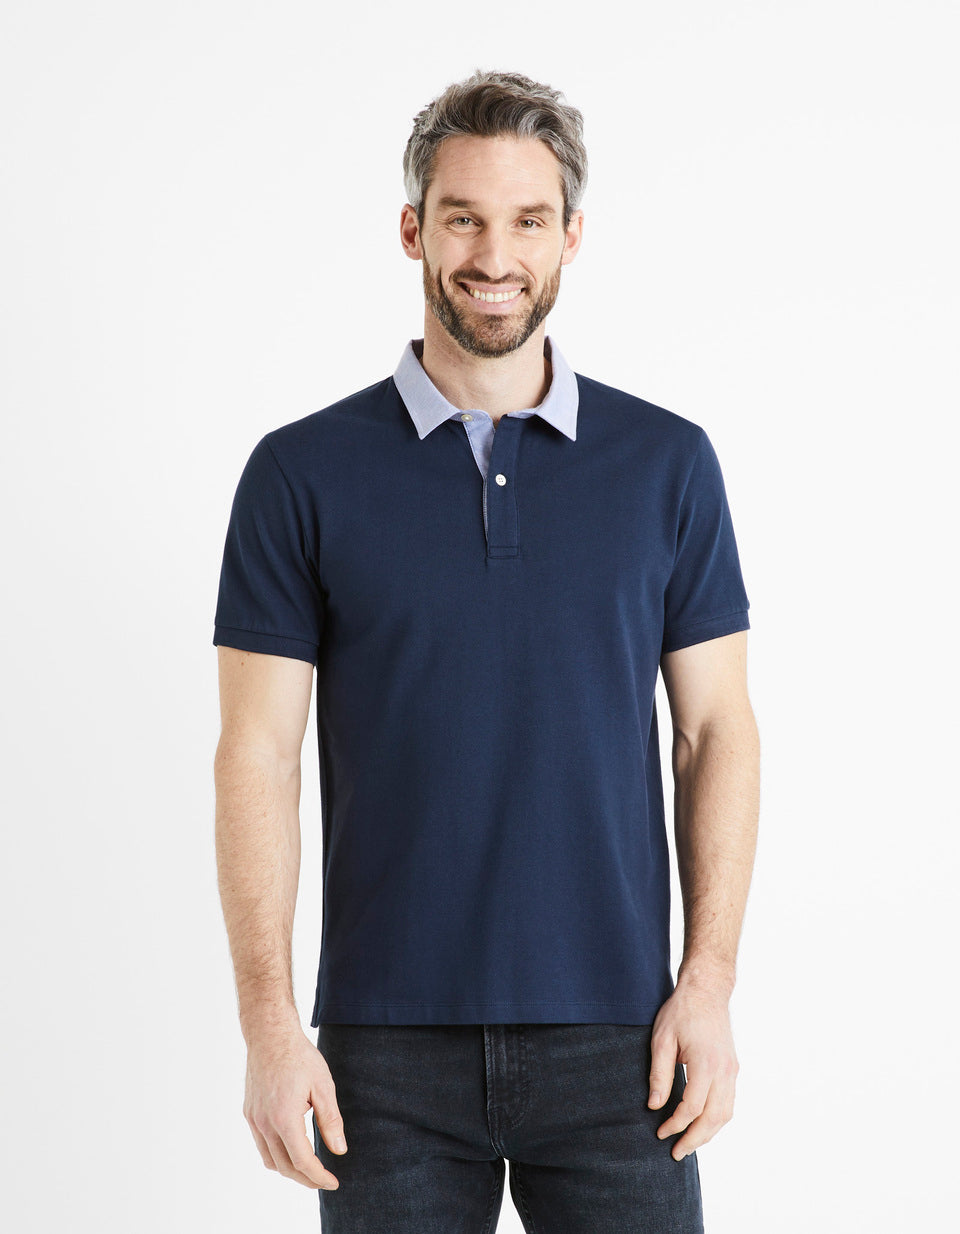 Pique Polo Shirt Collar 100% Cotton - Navy - 01